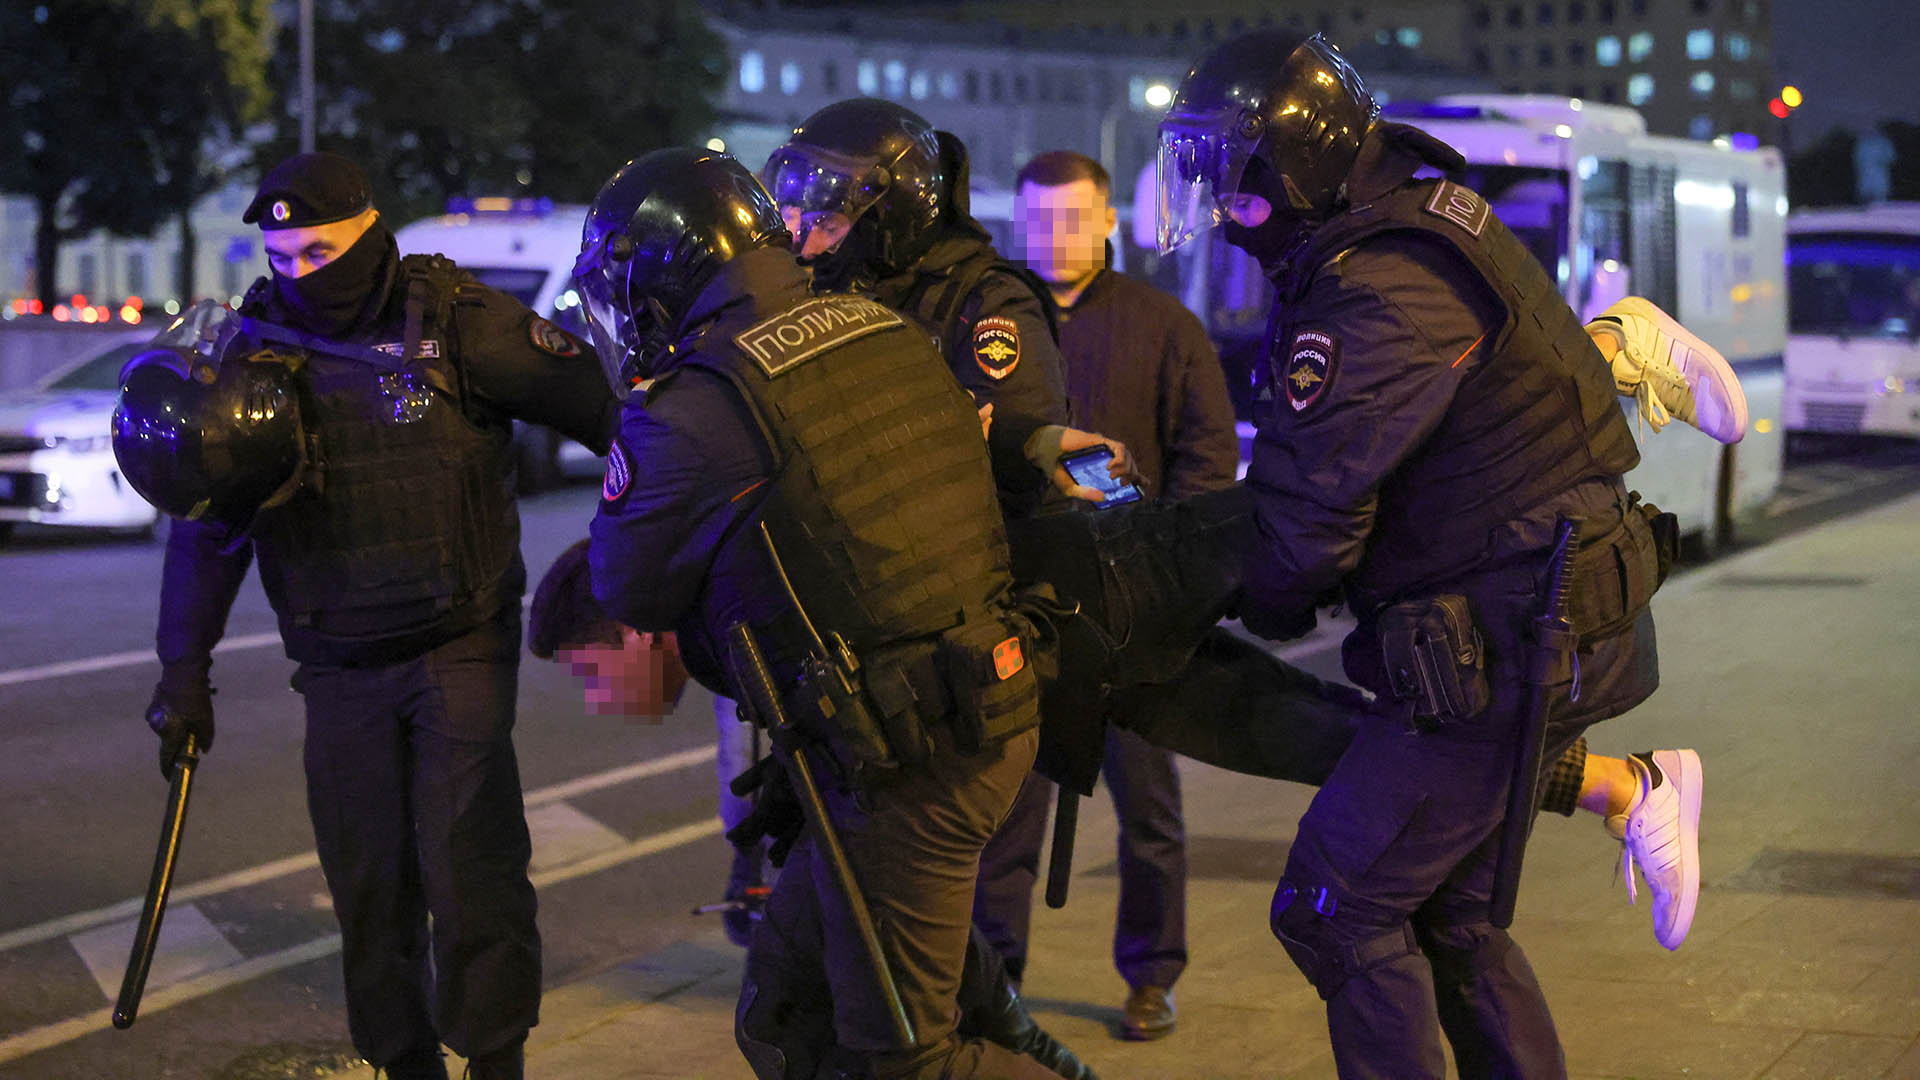 Russische Polizeibeamte nehmen eine Person während einer nicht genehmigten Kundgebung fest. (aufgenommen am 21. September) | REUTERS